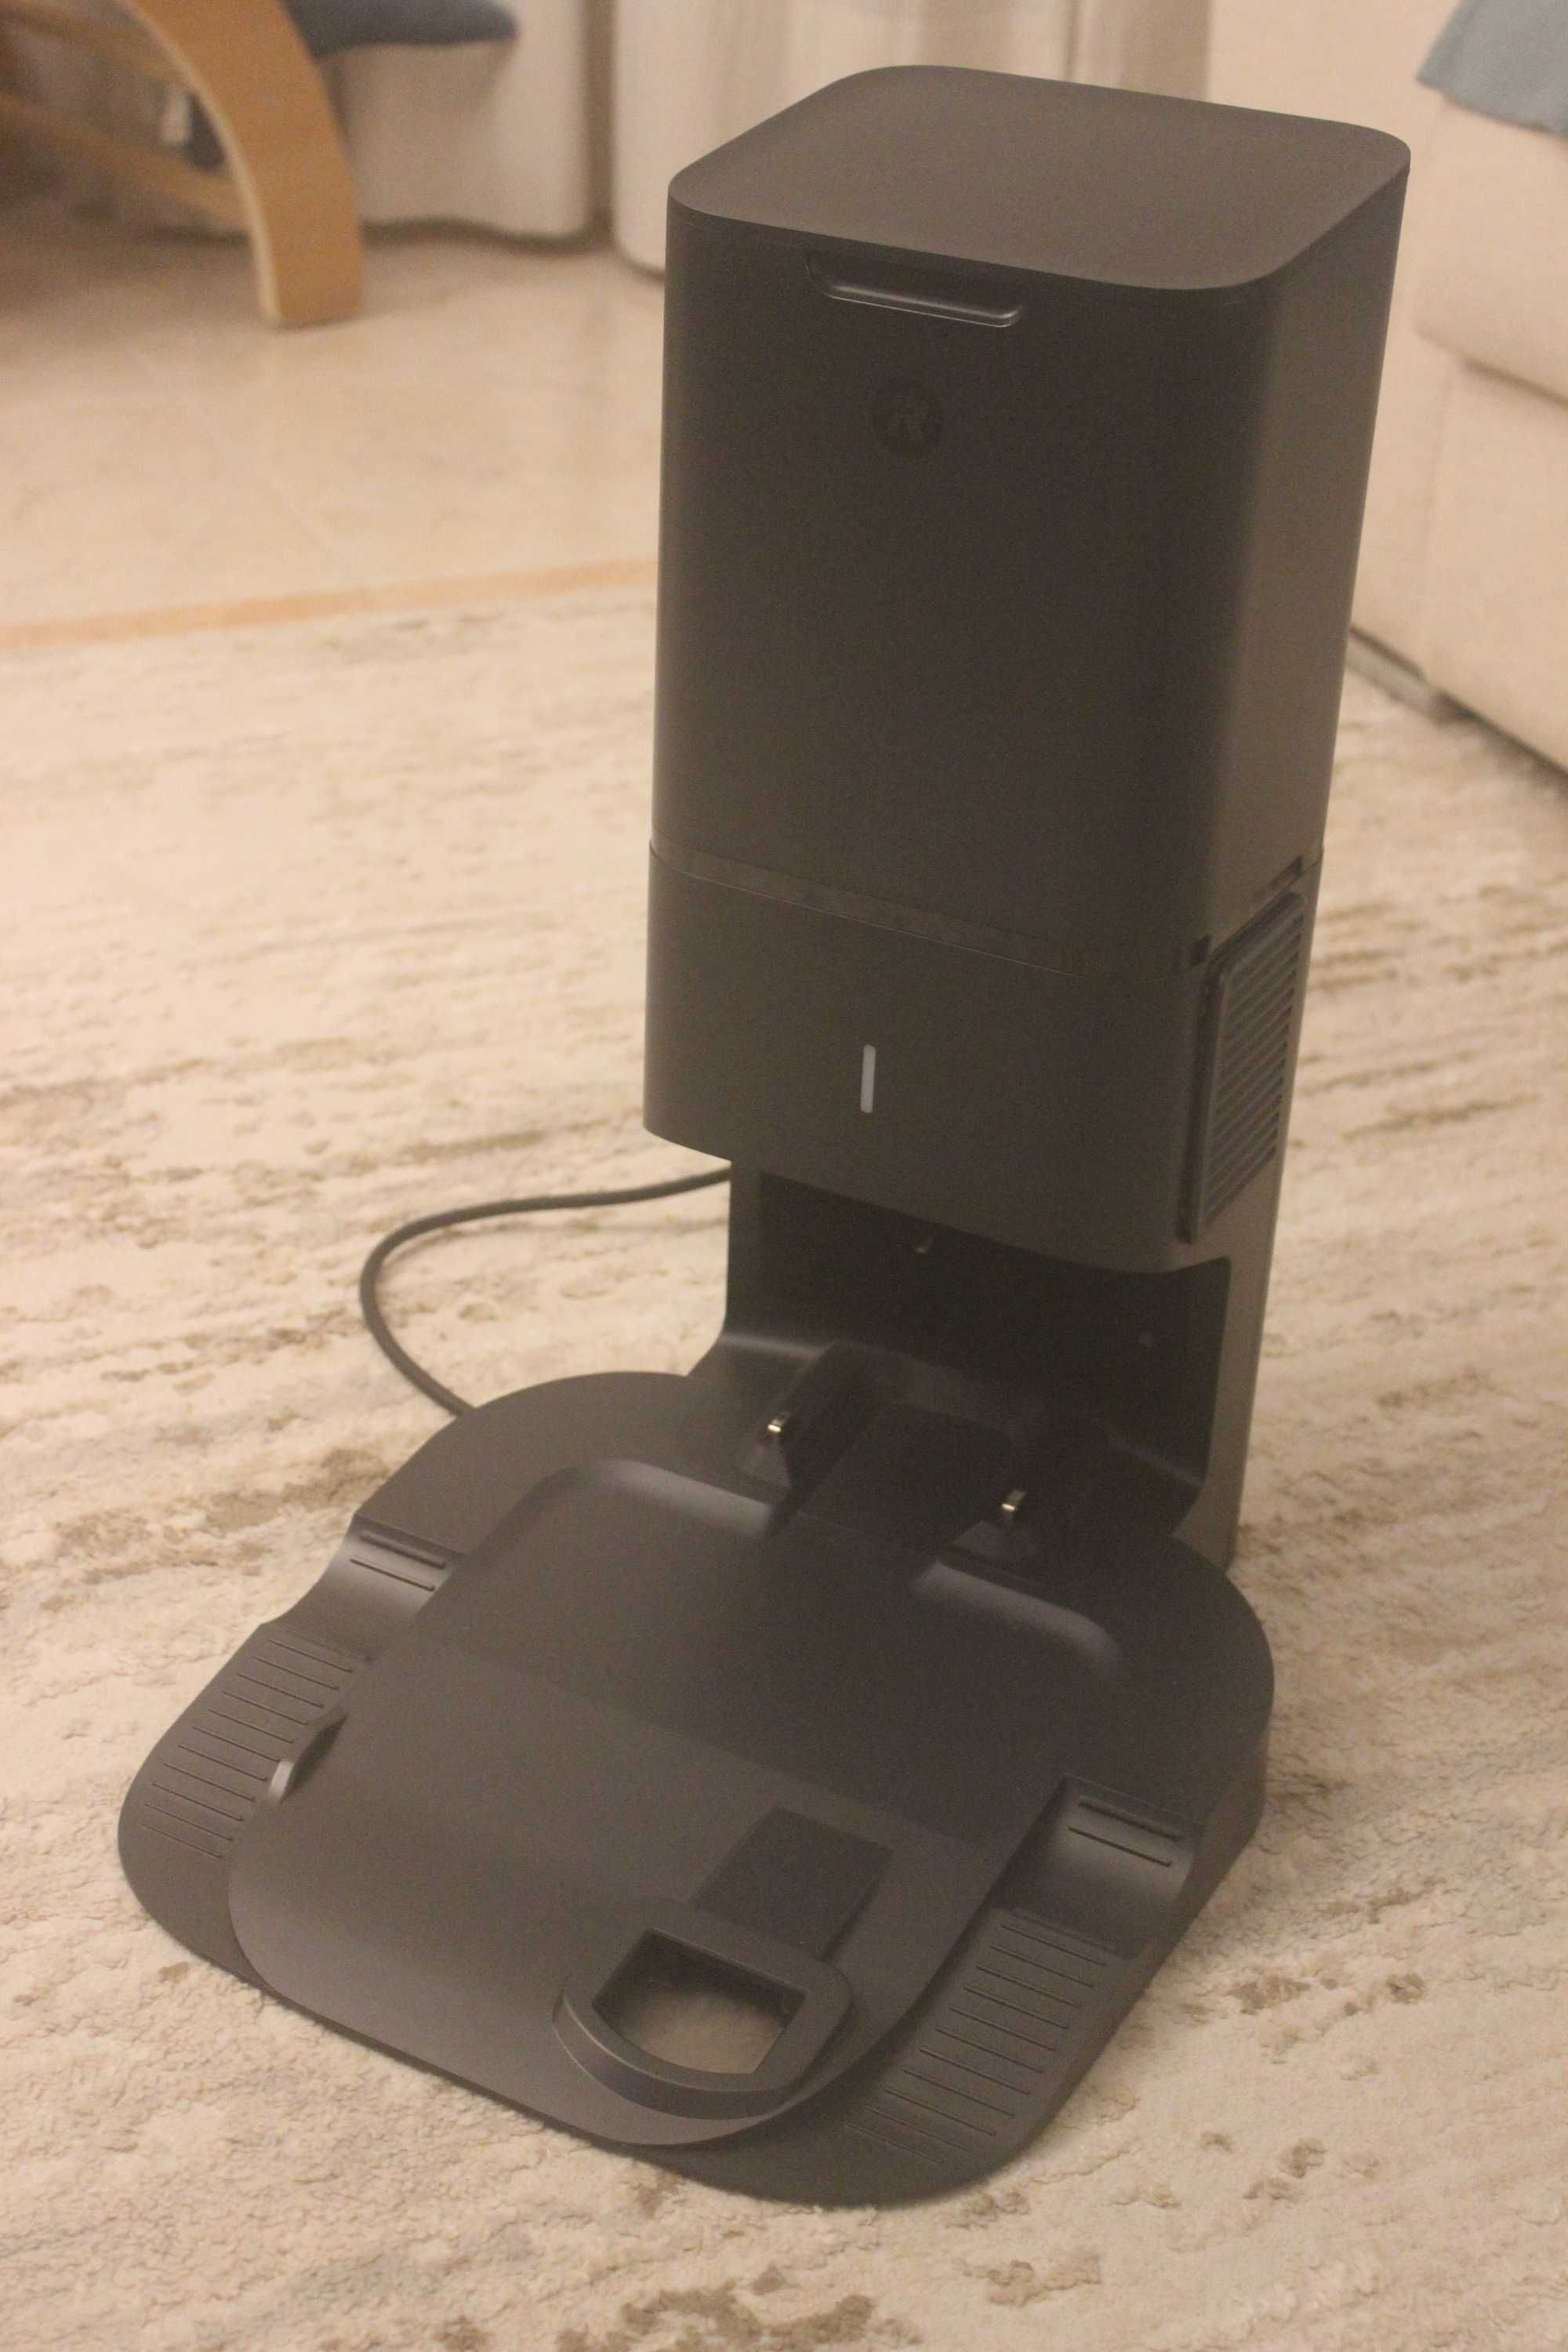 Robot Aspirador - Roomba i5 + Base